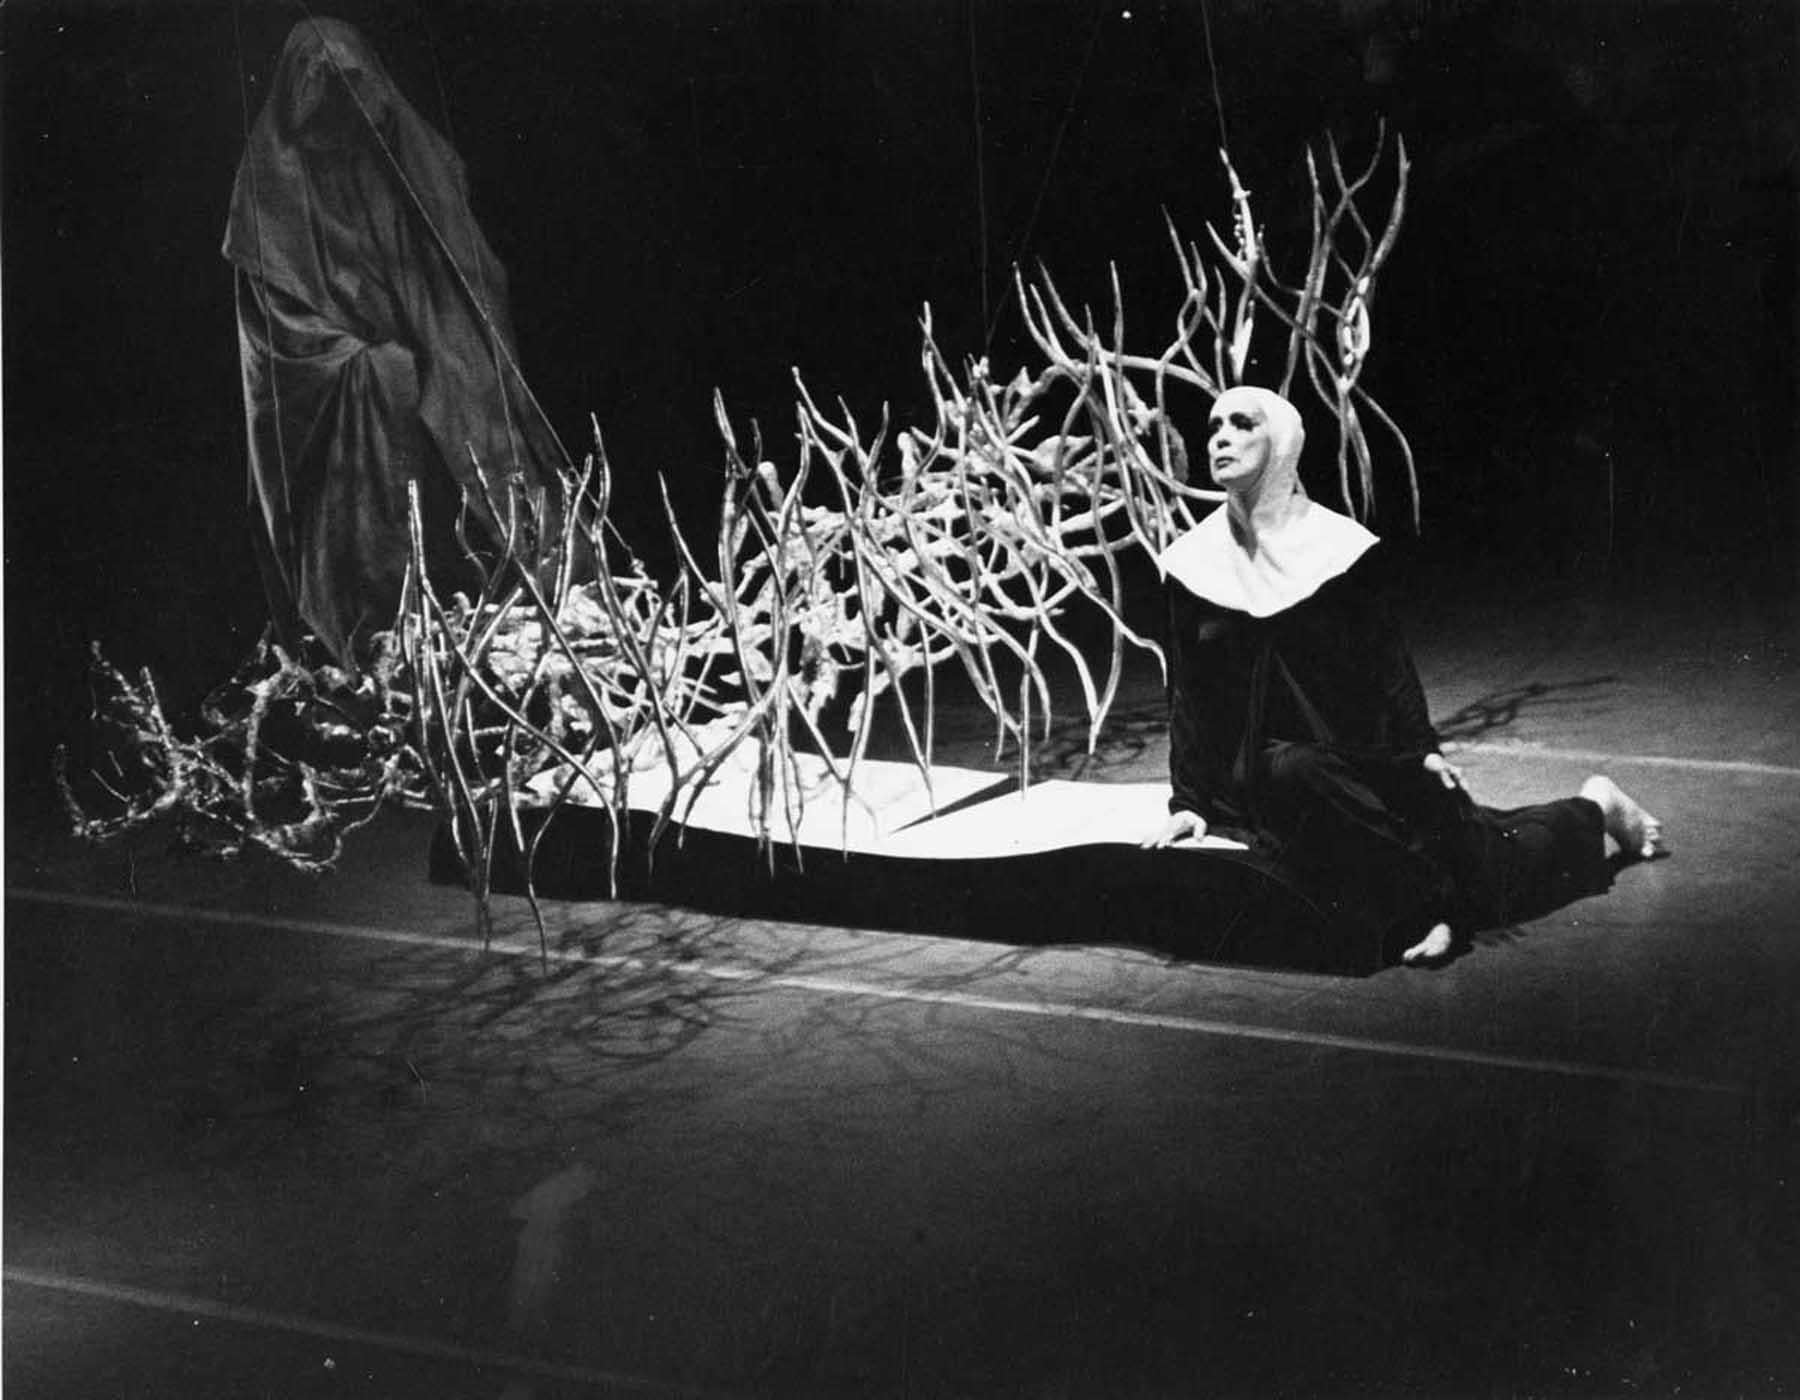 11 x 14" alte Silbergelatinefotografie von Martha Graham bei der Aufführung von "Time of Snow", 1966. Signiert von Jack Mitchell auf der Rückseite des Drucks. Kommt direkt aus dem Jack Mitchell Archiv mit einem Echtheitszertifikat.

Jack Mitchells